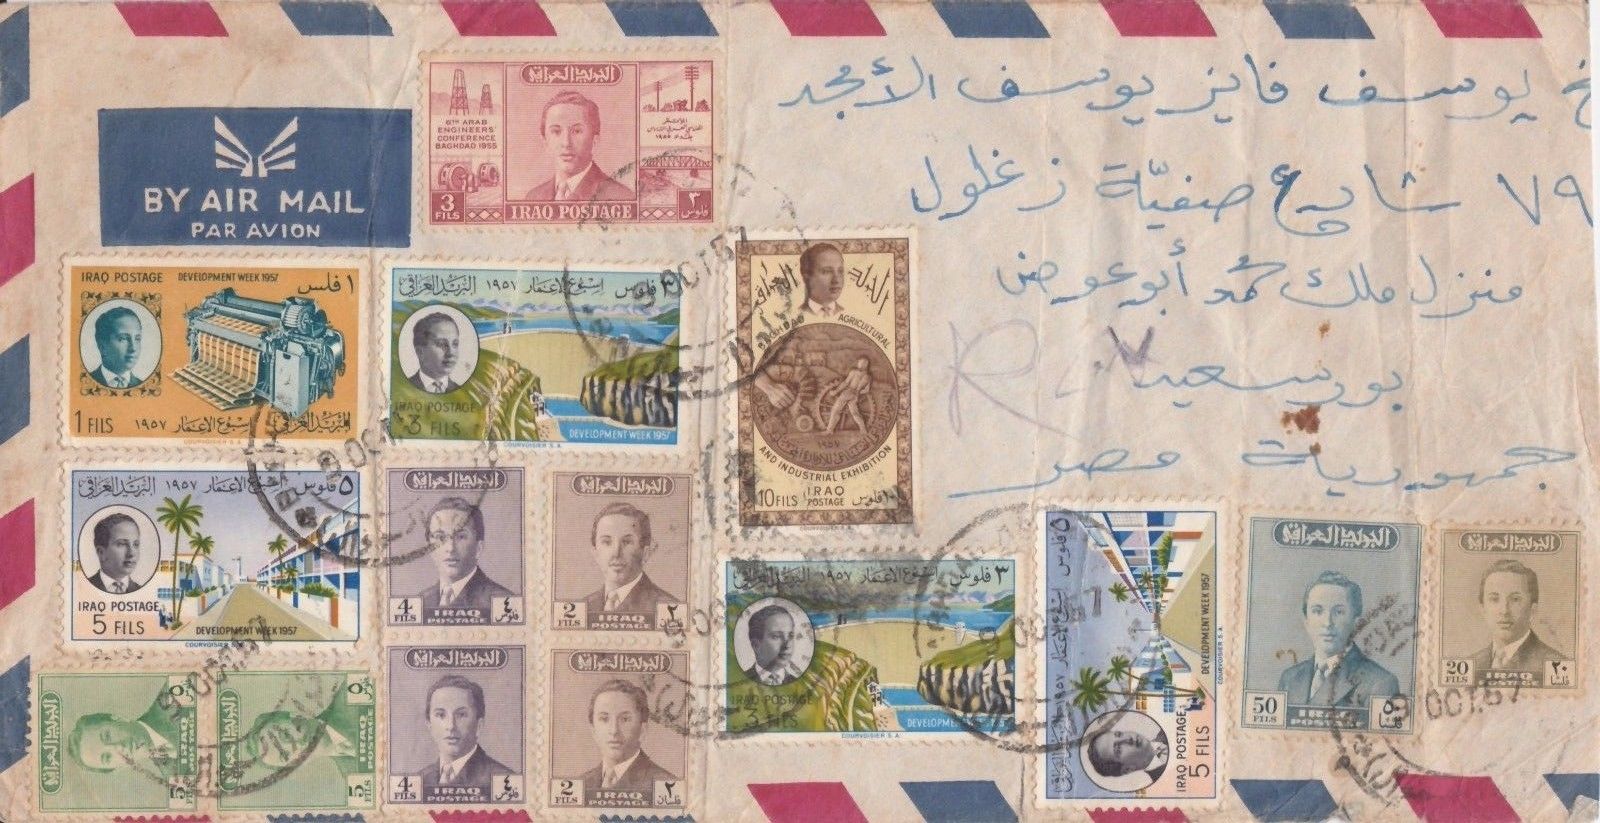 IRAQ , Iraqi  Kingdom Era Cover Sent to EGYPT 1957 with Iraqi Kingdom lot Stamps